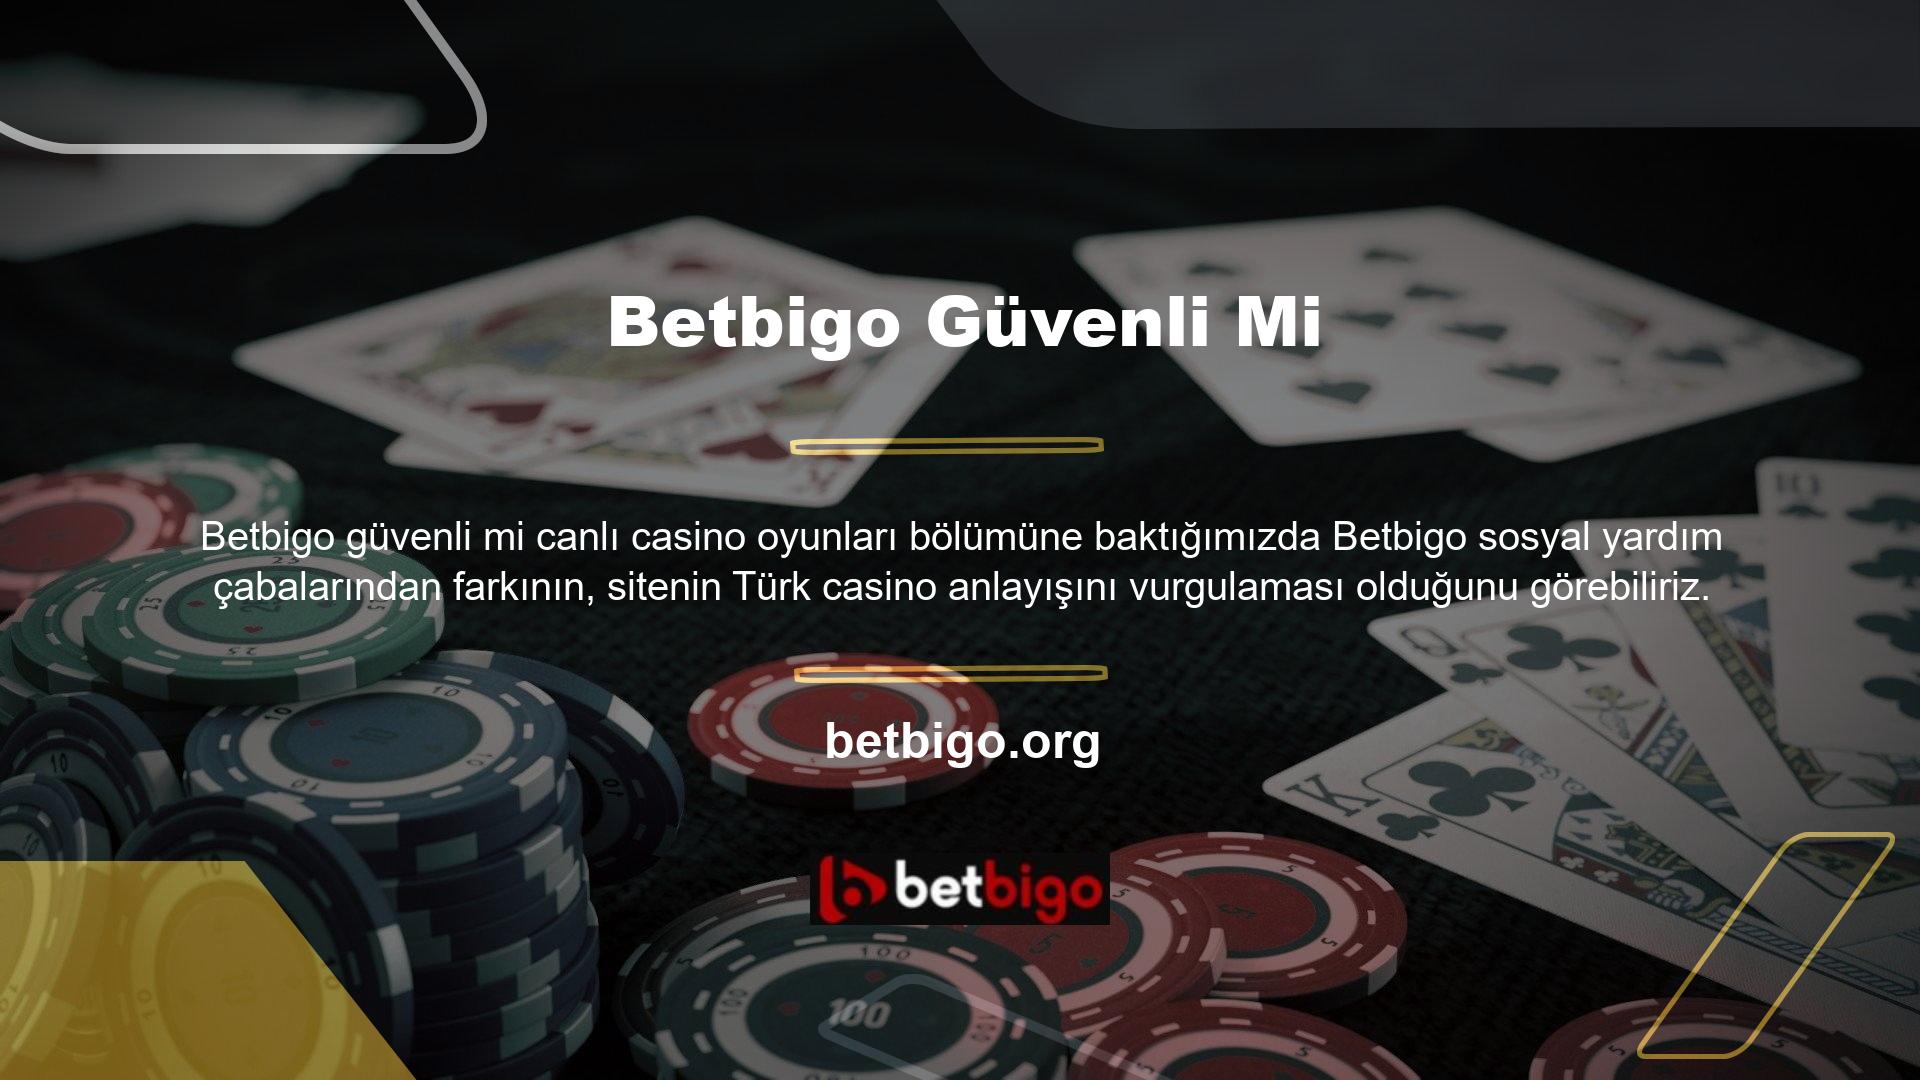 Bu durumda Betbigo web sitesinde yer alan canlı casino masalarında krupiye ile Türkçe olarak da iletişim kurabilirsiniz